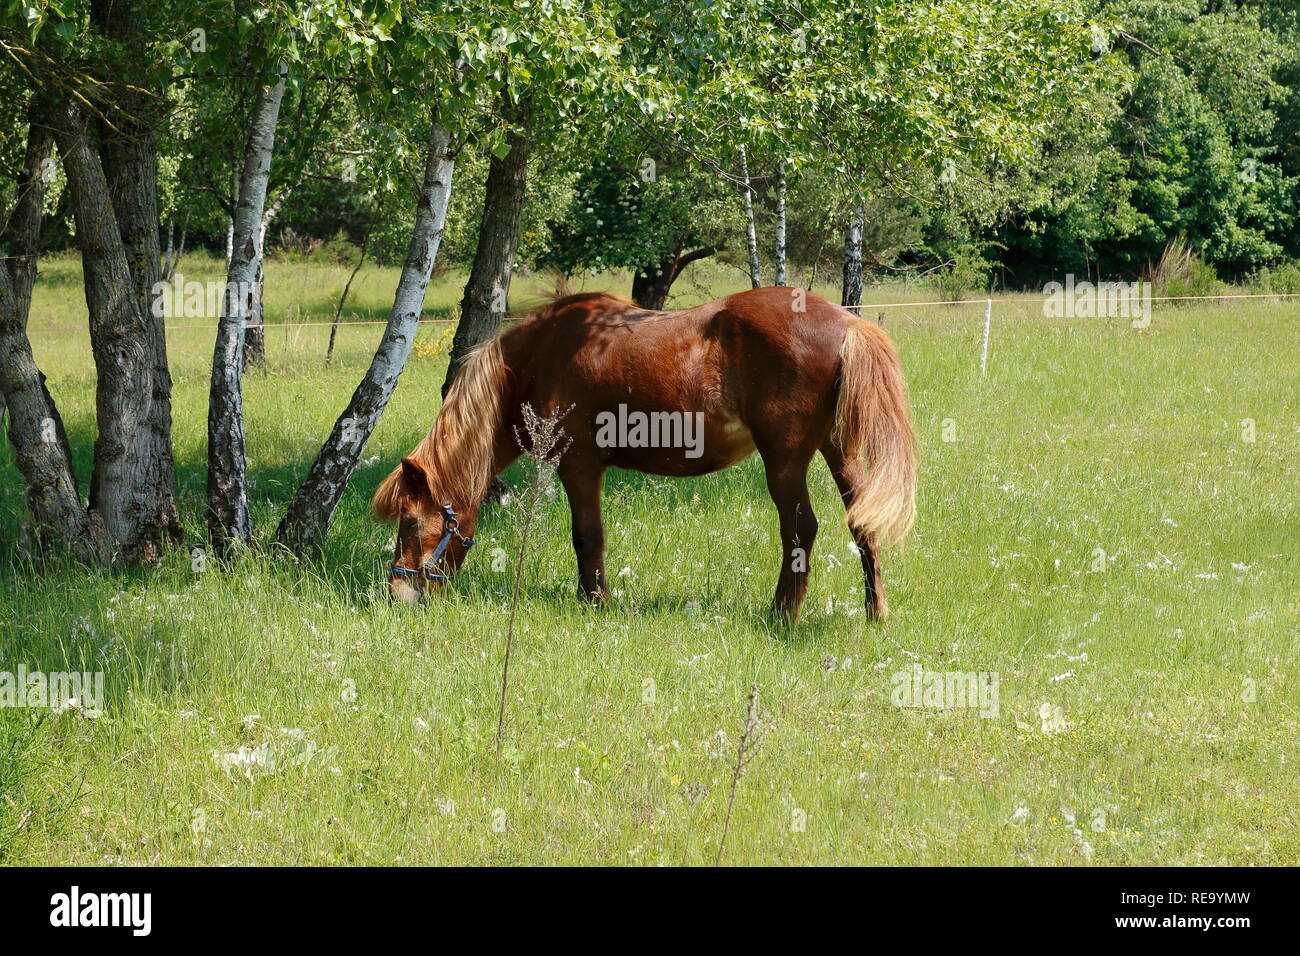 Pferde laufen über die Felder in den Sanddünen, einem Naturschutzgebiet in Baden-Baden Sandweier Stock Photo